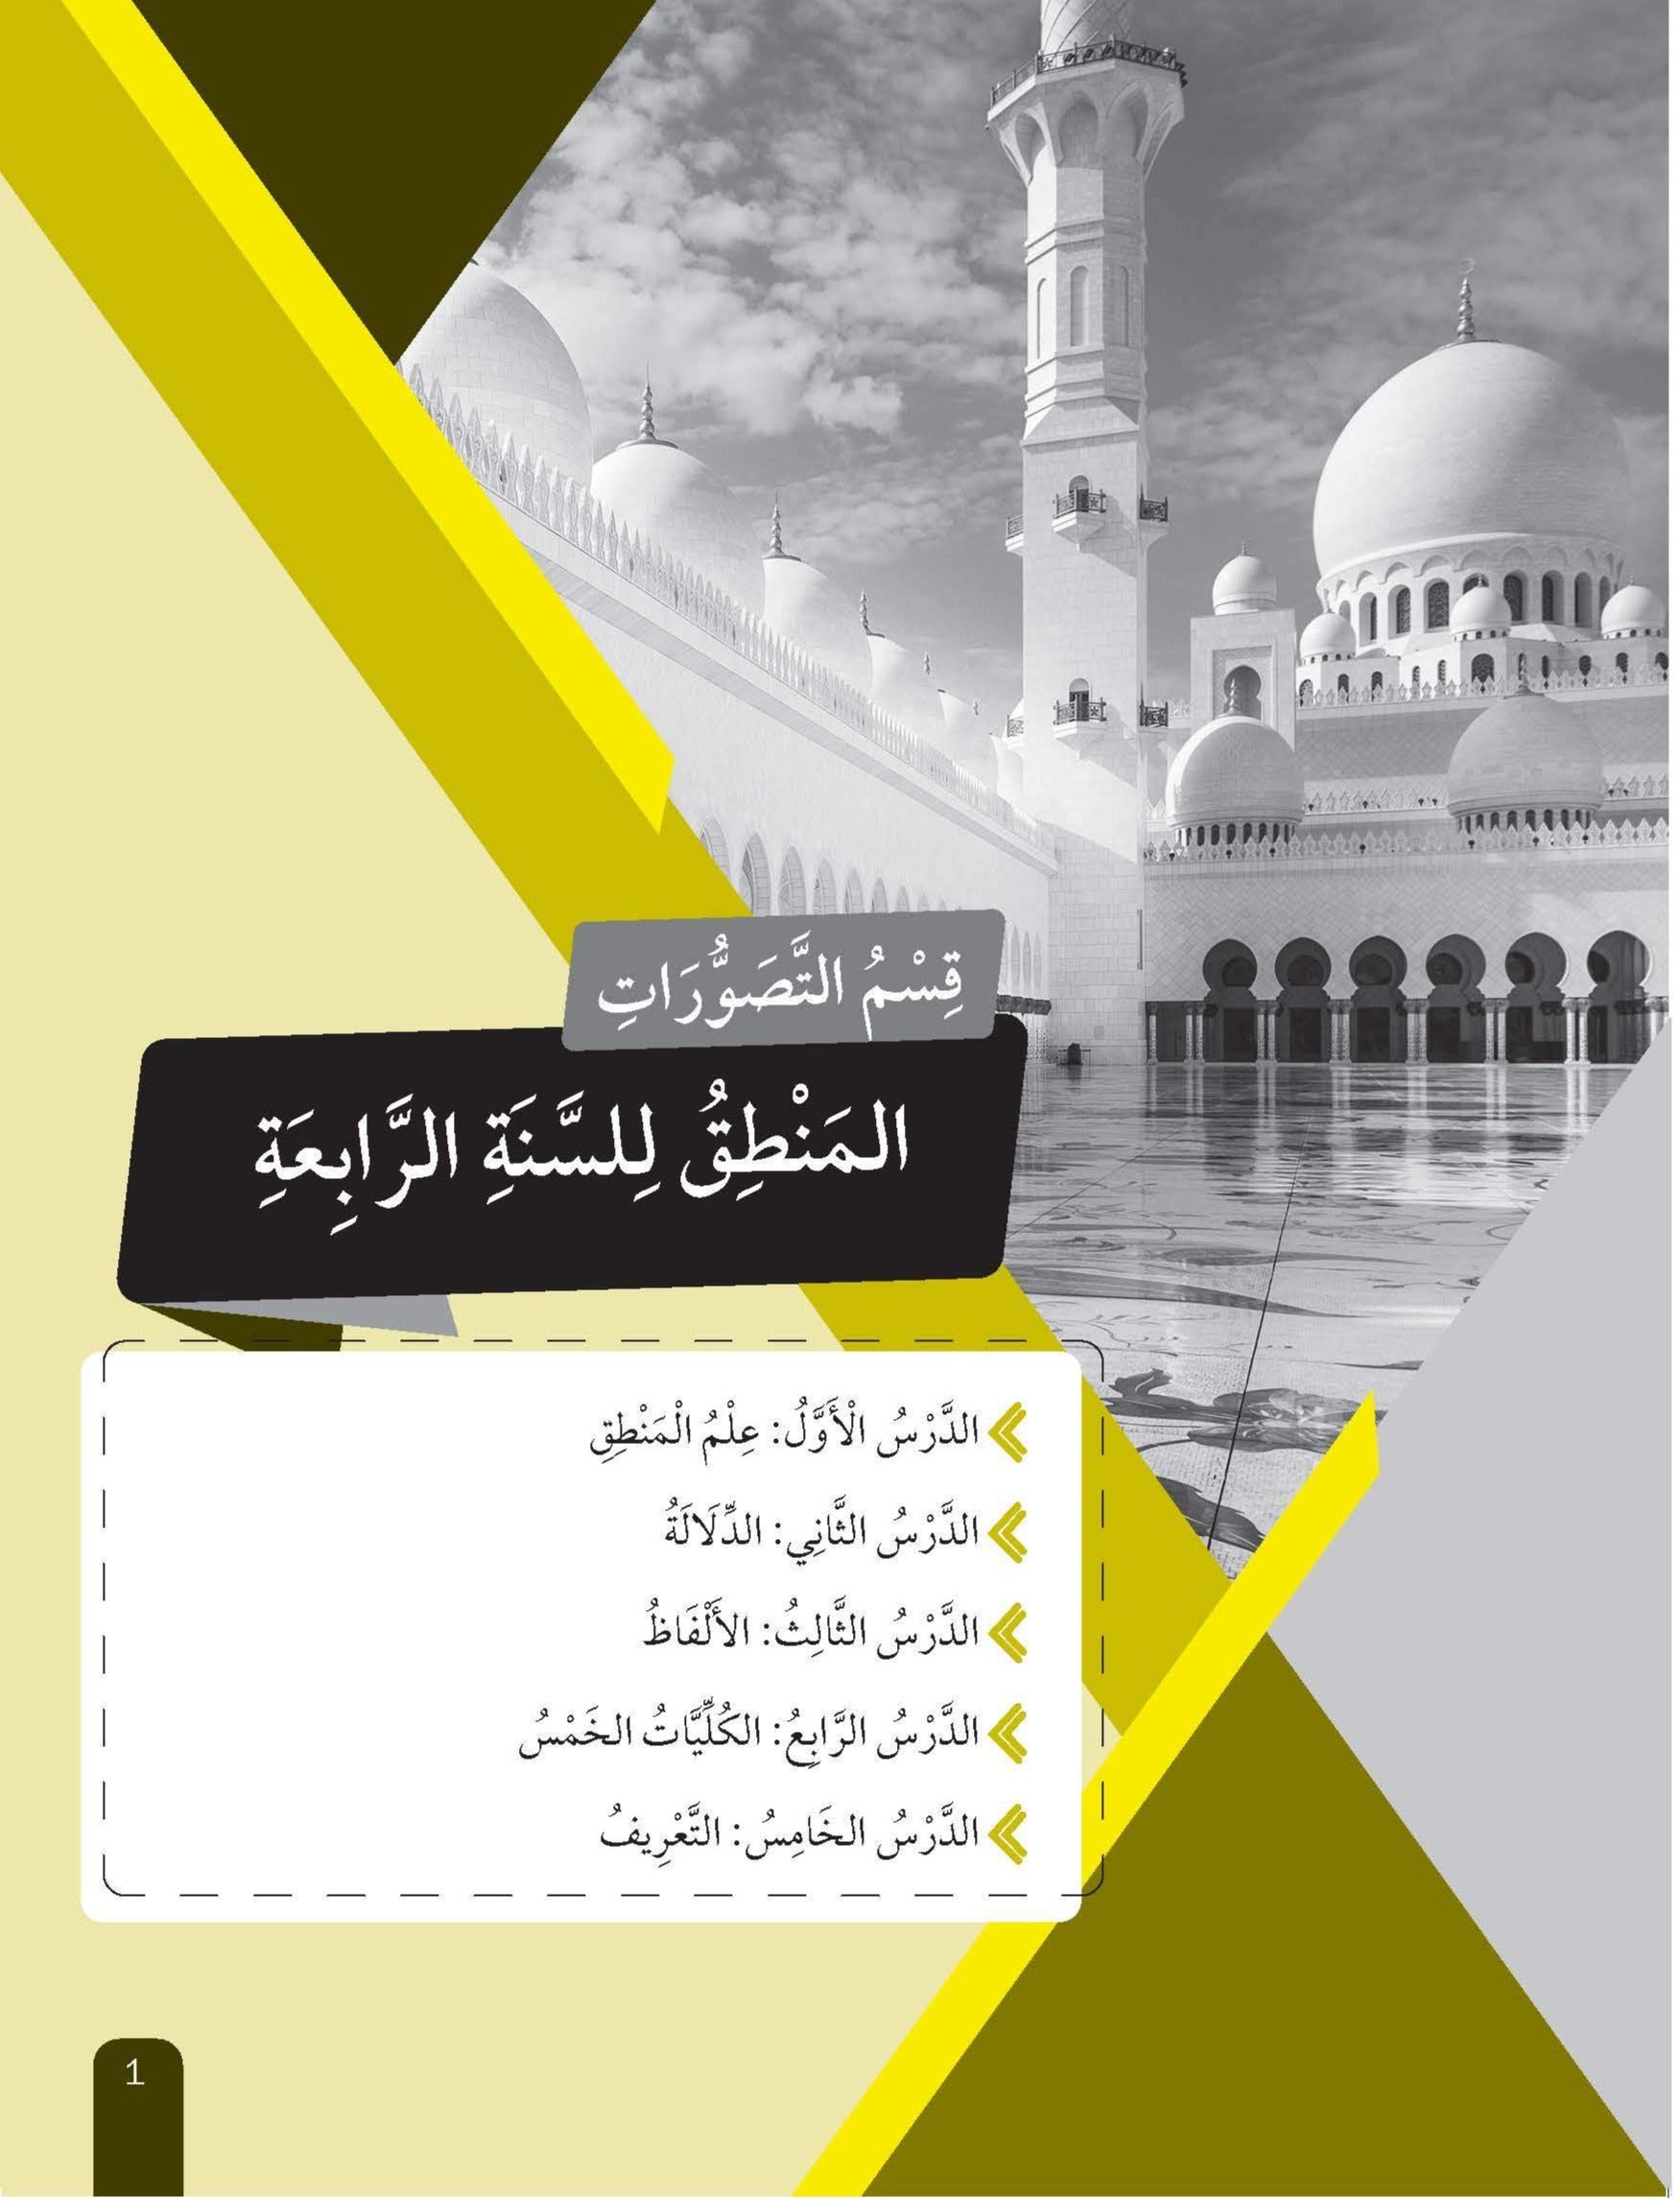 Skor Mumtaz Muzakkirat Manahij Al-Ulum Al-Islamiah Tingkatan 4&5 - (TBBS1173)